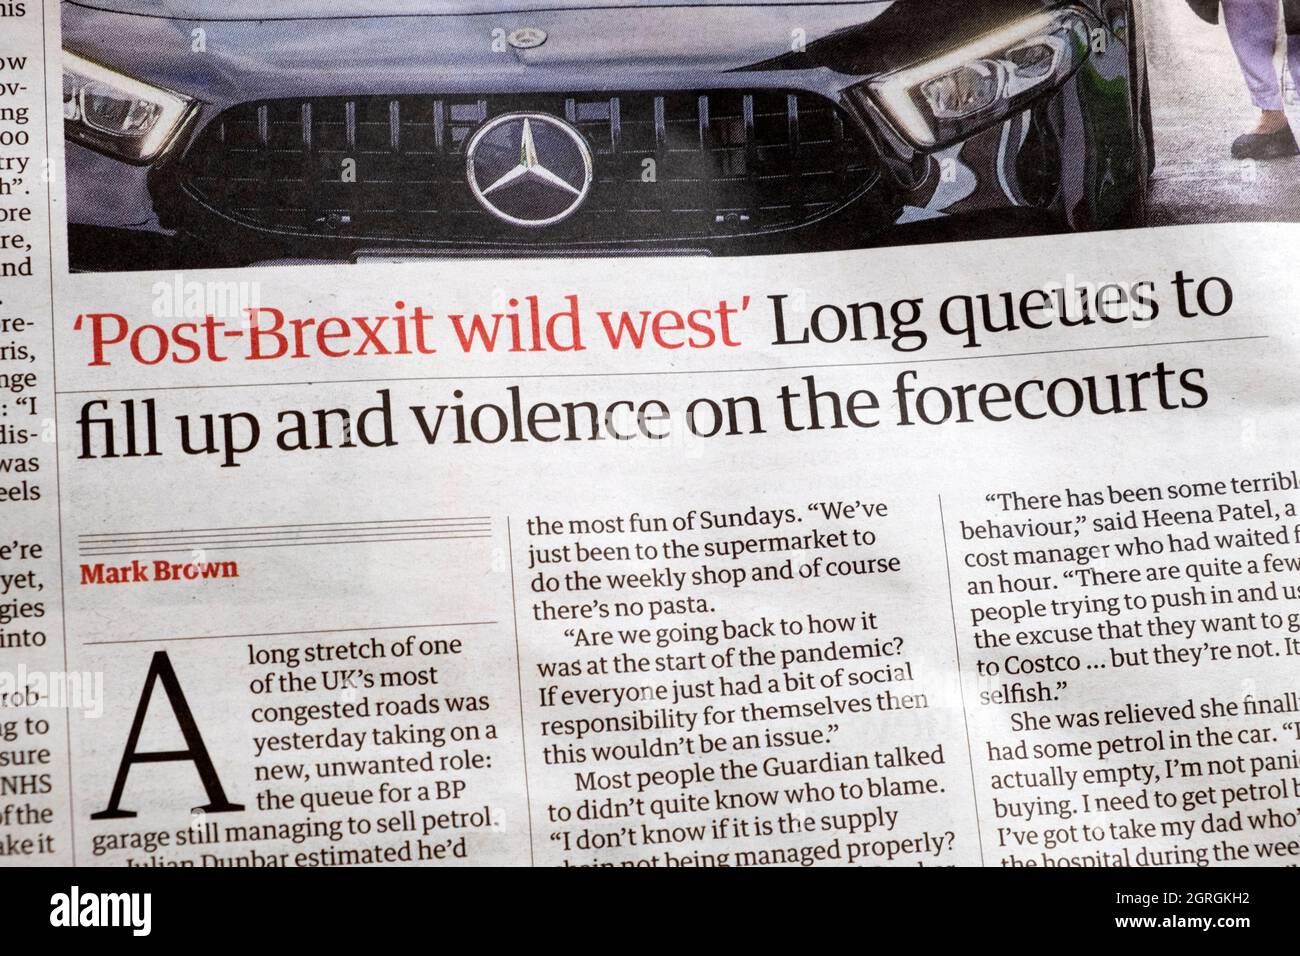 'Post-Brexit Wild West lunghe code per riempirsi e violenza sulle previsioni' giornale Guardian headline carenza di benzina 27 settembre 2021 Londra UK Foto Stock